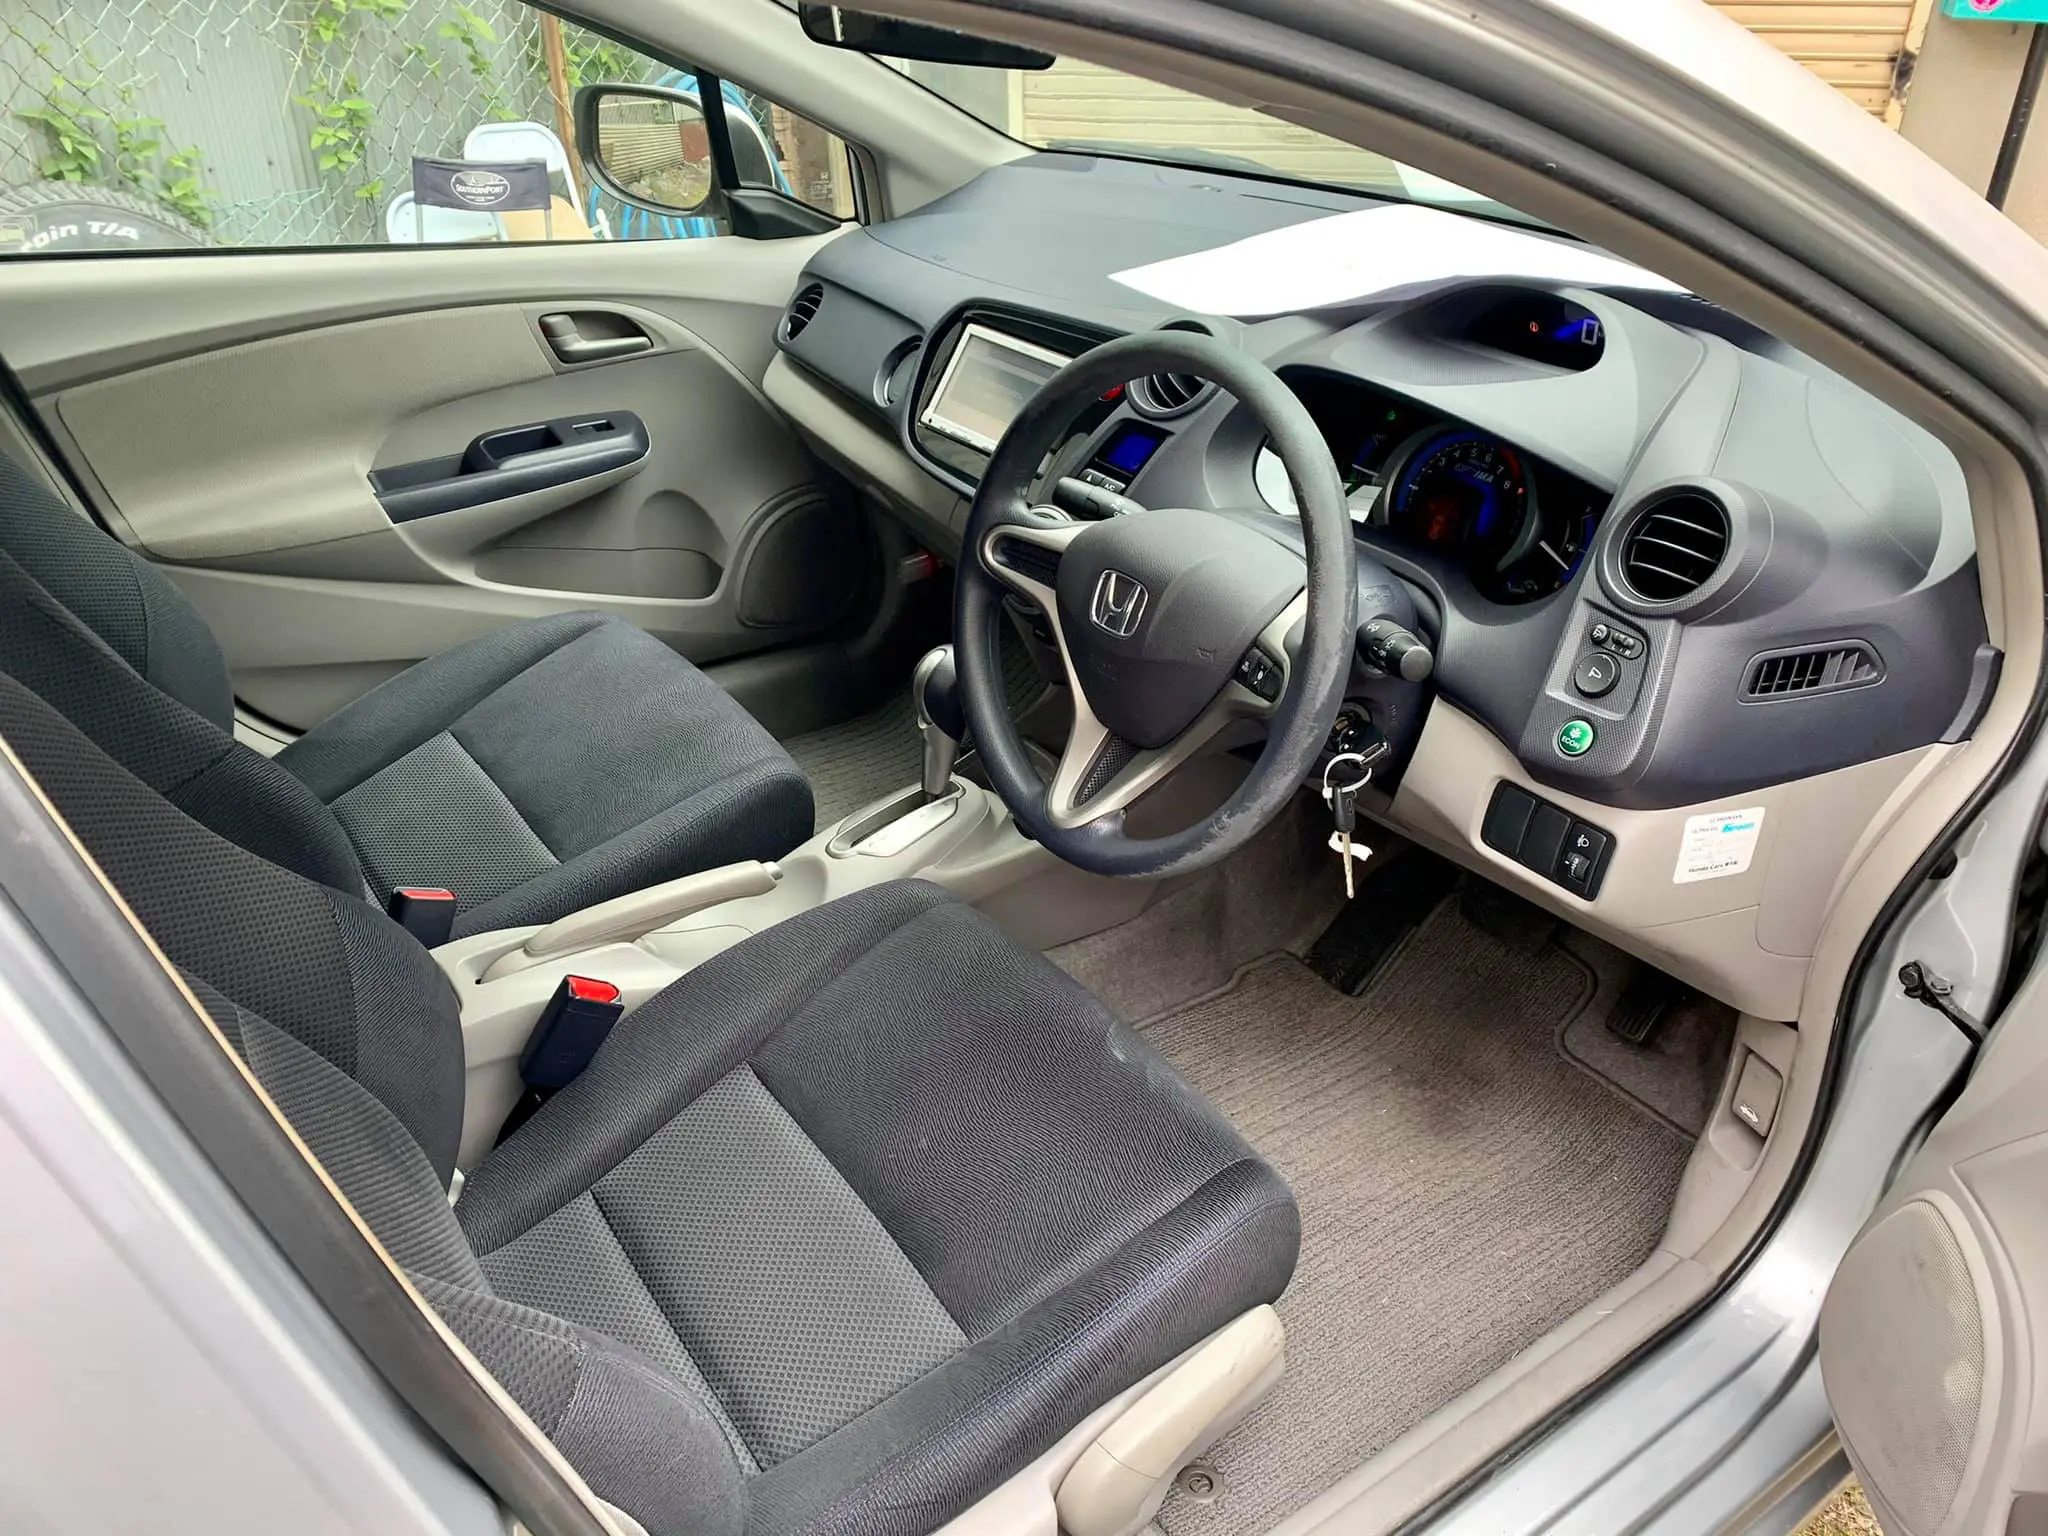 Chi tiết nội thất xe Honda Insight sang trọng 8